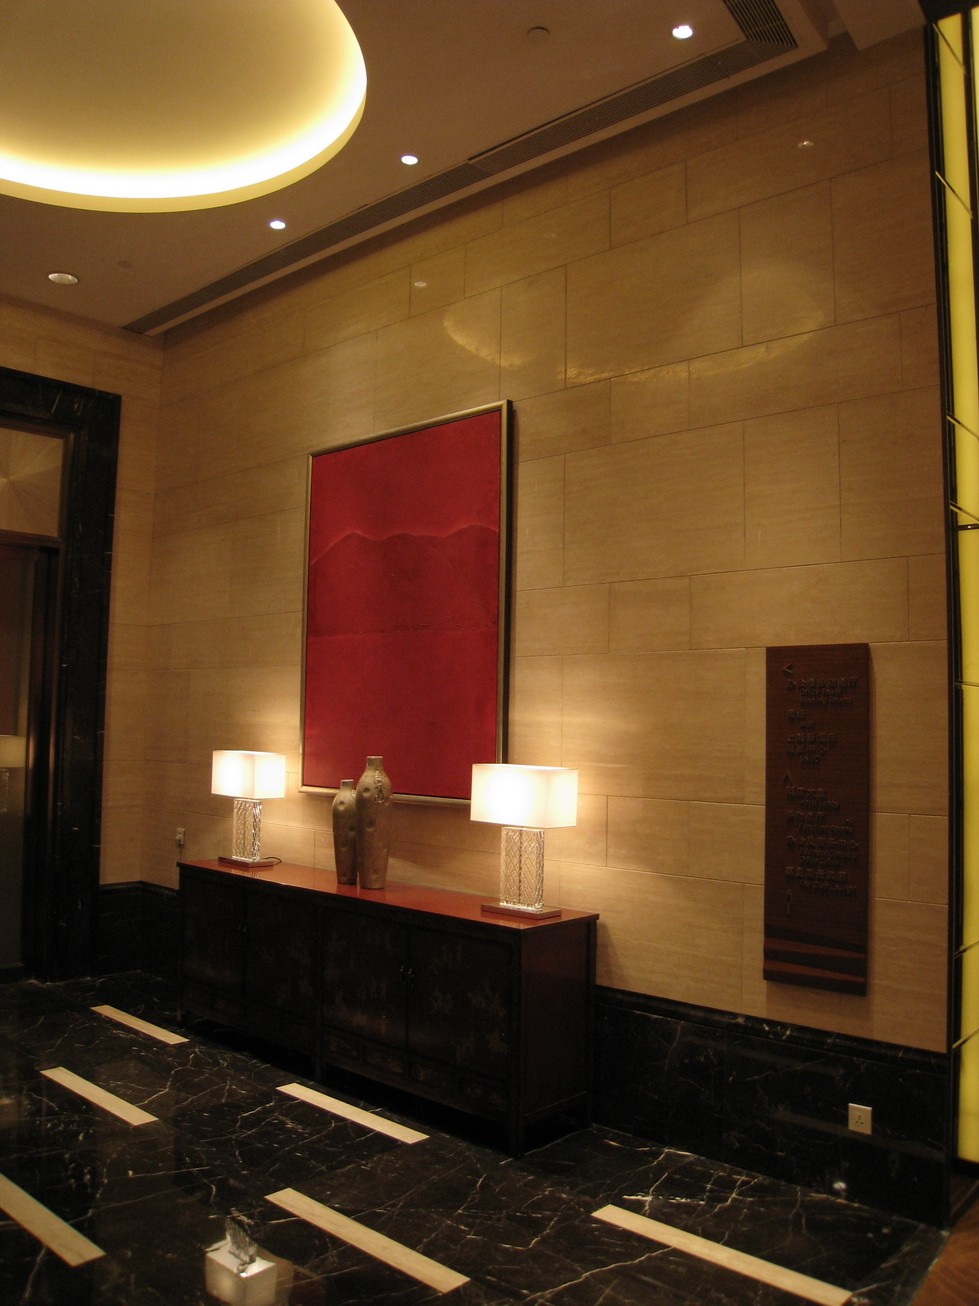 上海浦东嘉里大酒店( Kerry Hotel Pudong Shanghai)第12页更新_IMG_8979.JPG